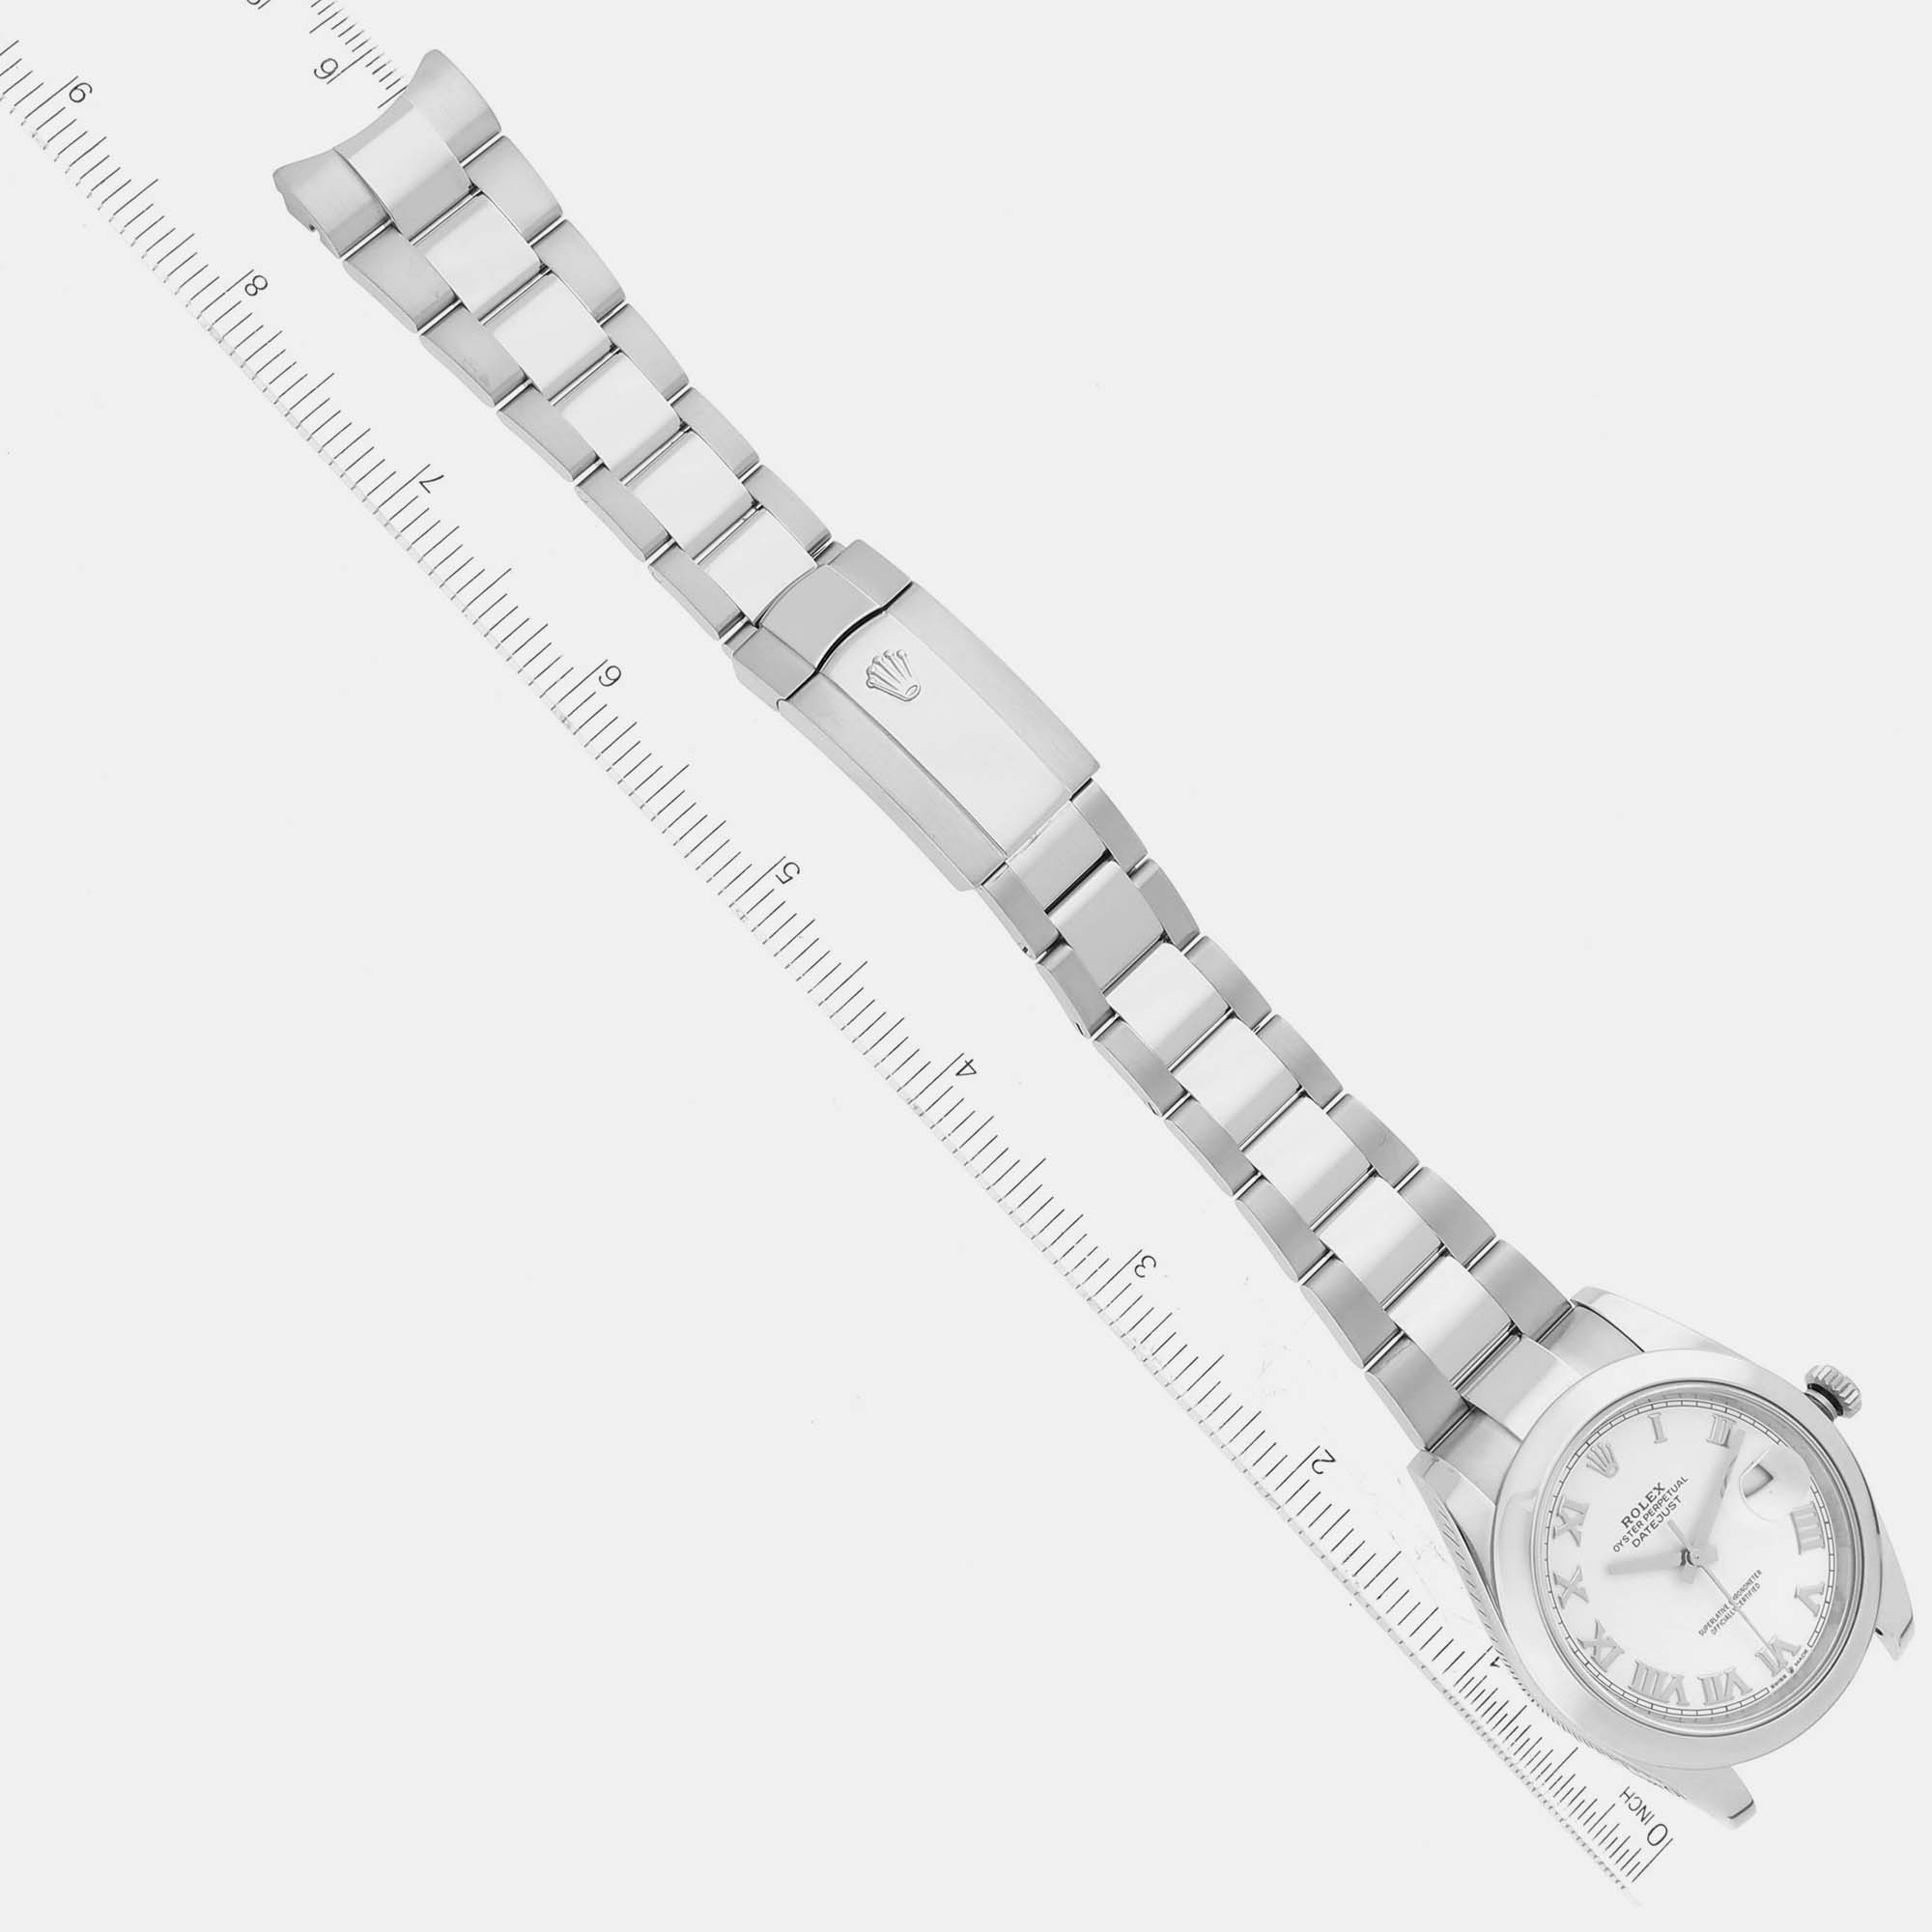 Rolex Datejust 41 White Dial Steel Men's Watch 126300 41 Mm